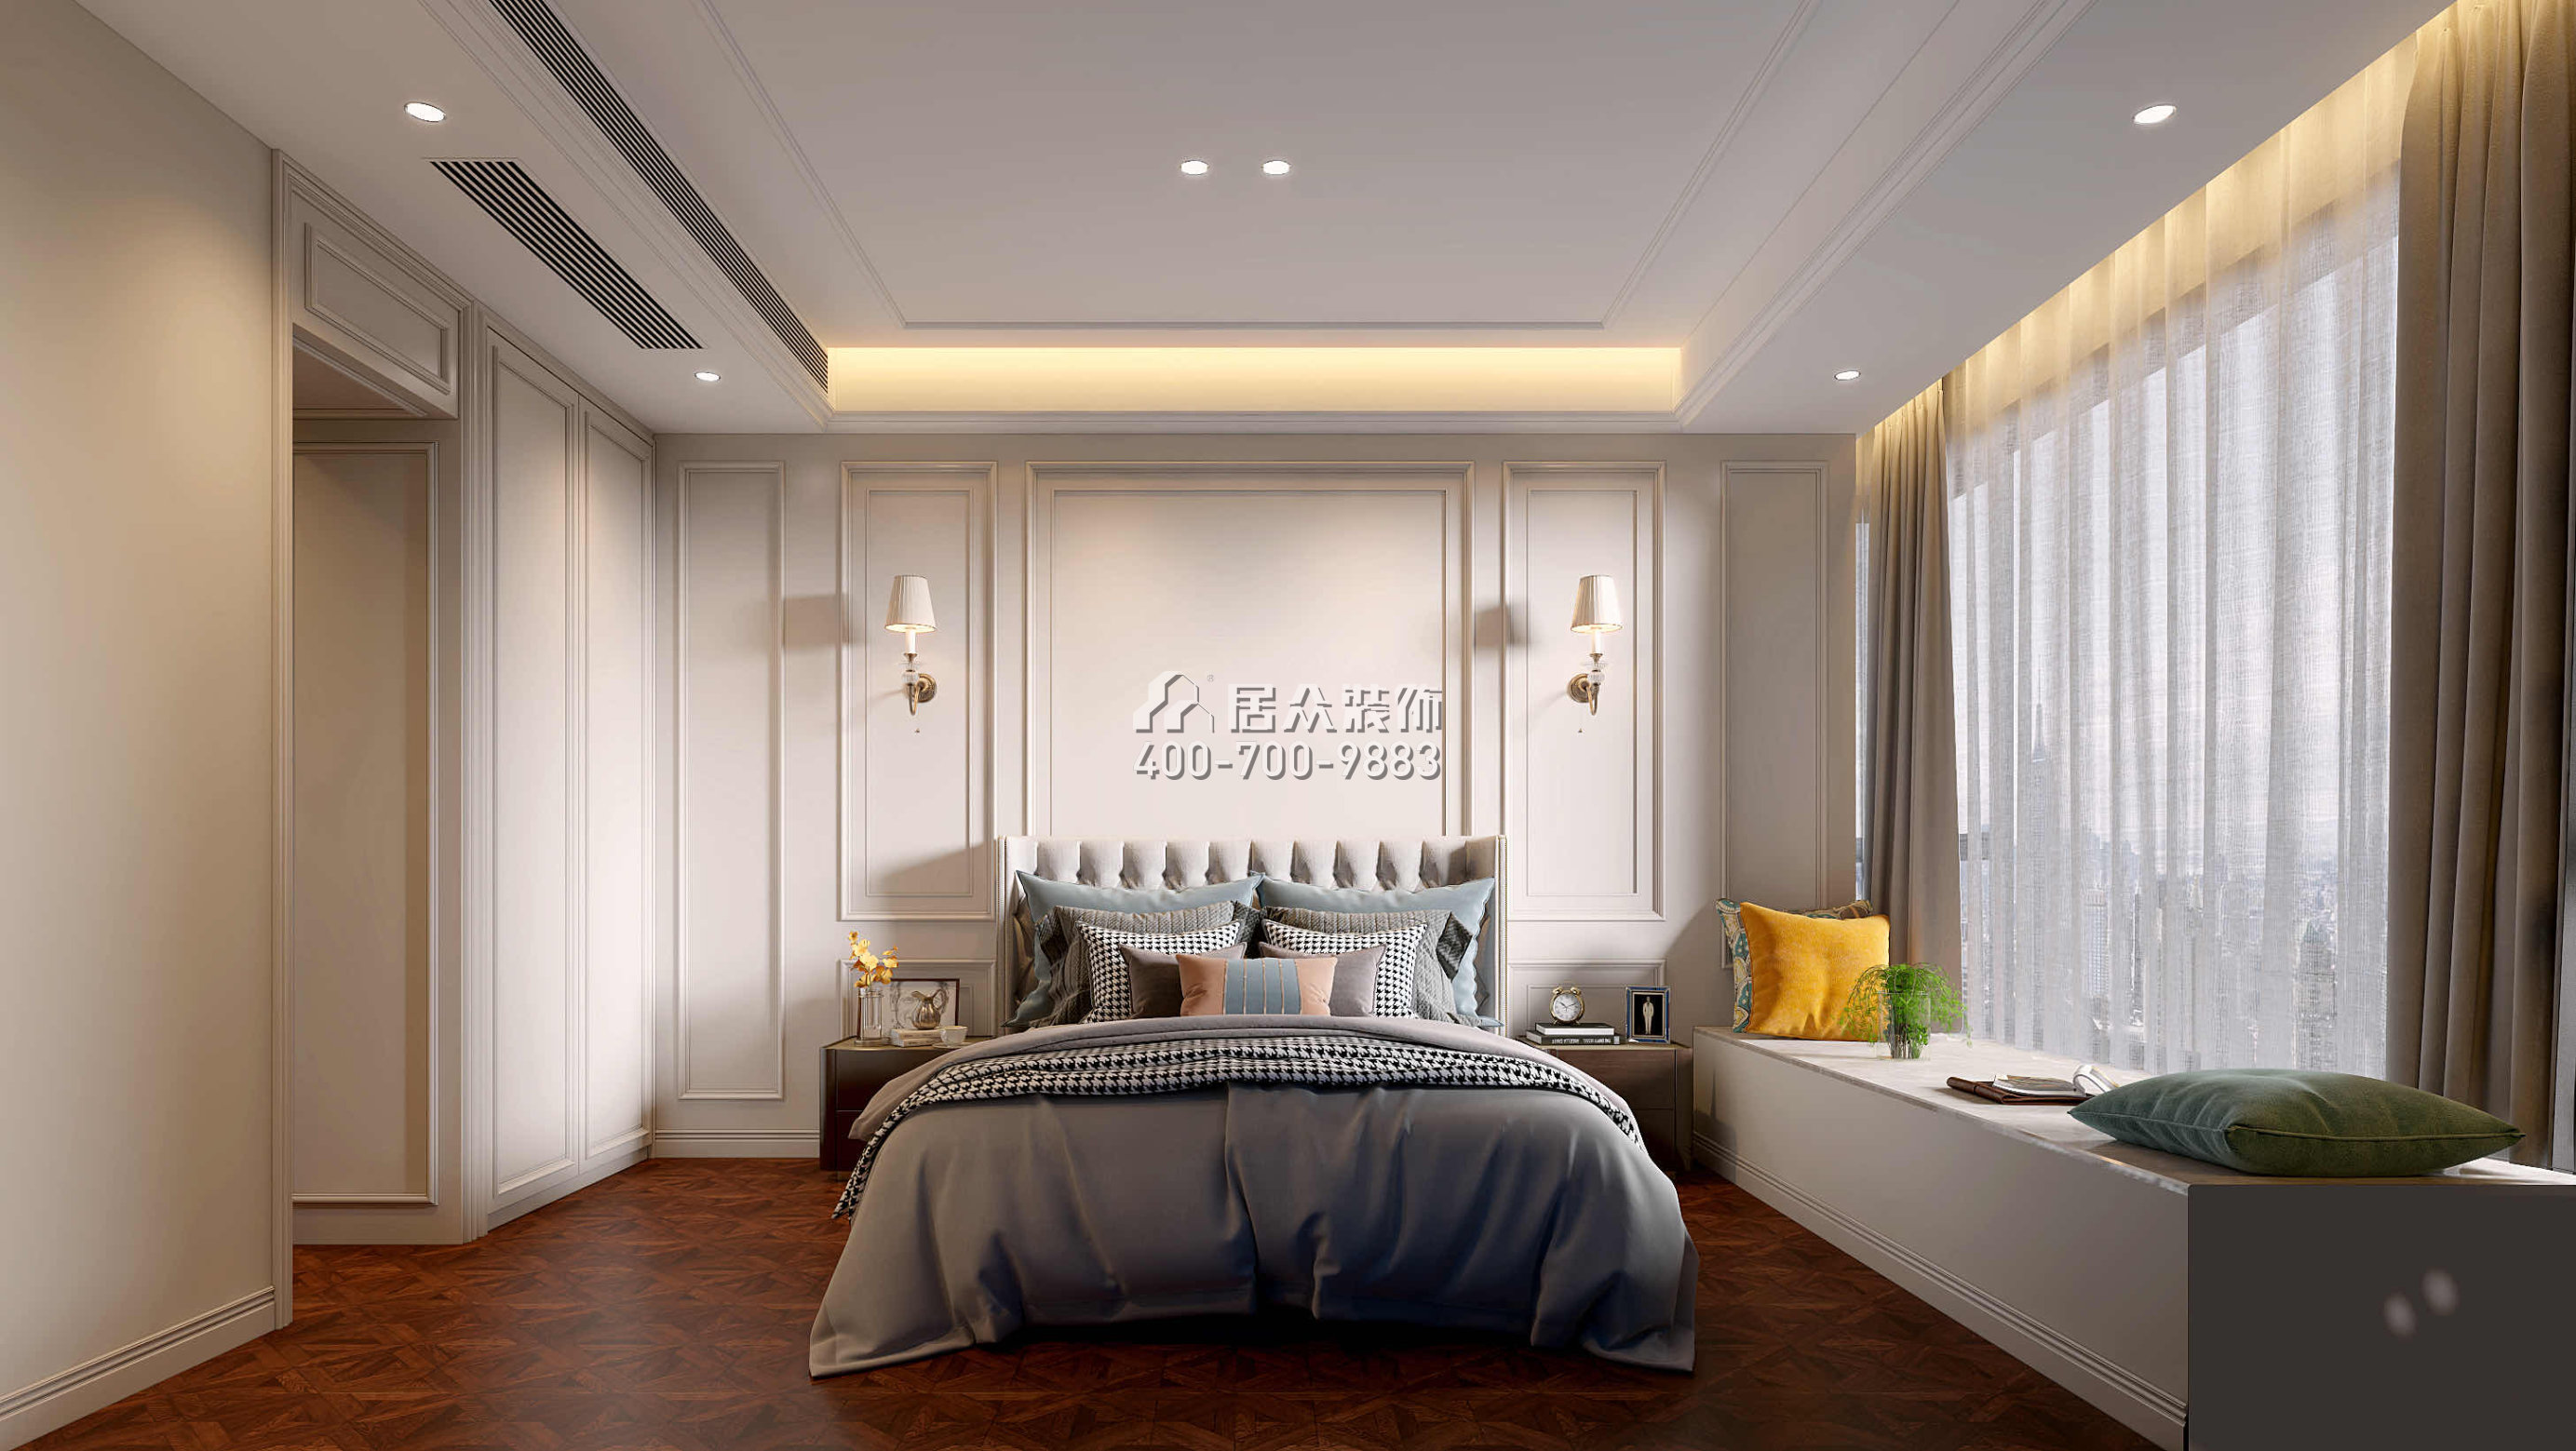 天健天骄南苑160平方米美式风格平层户型卧室装修效果图